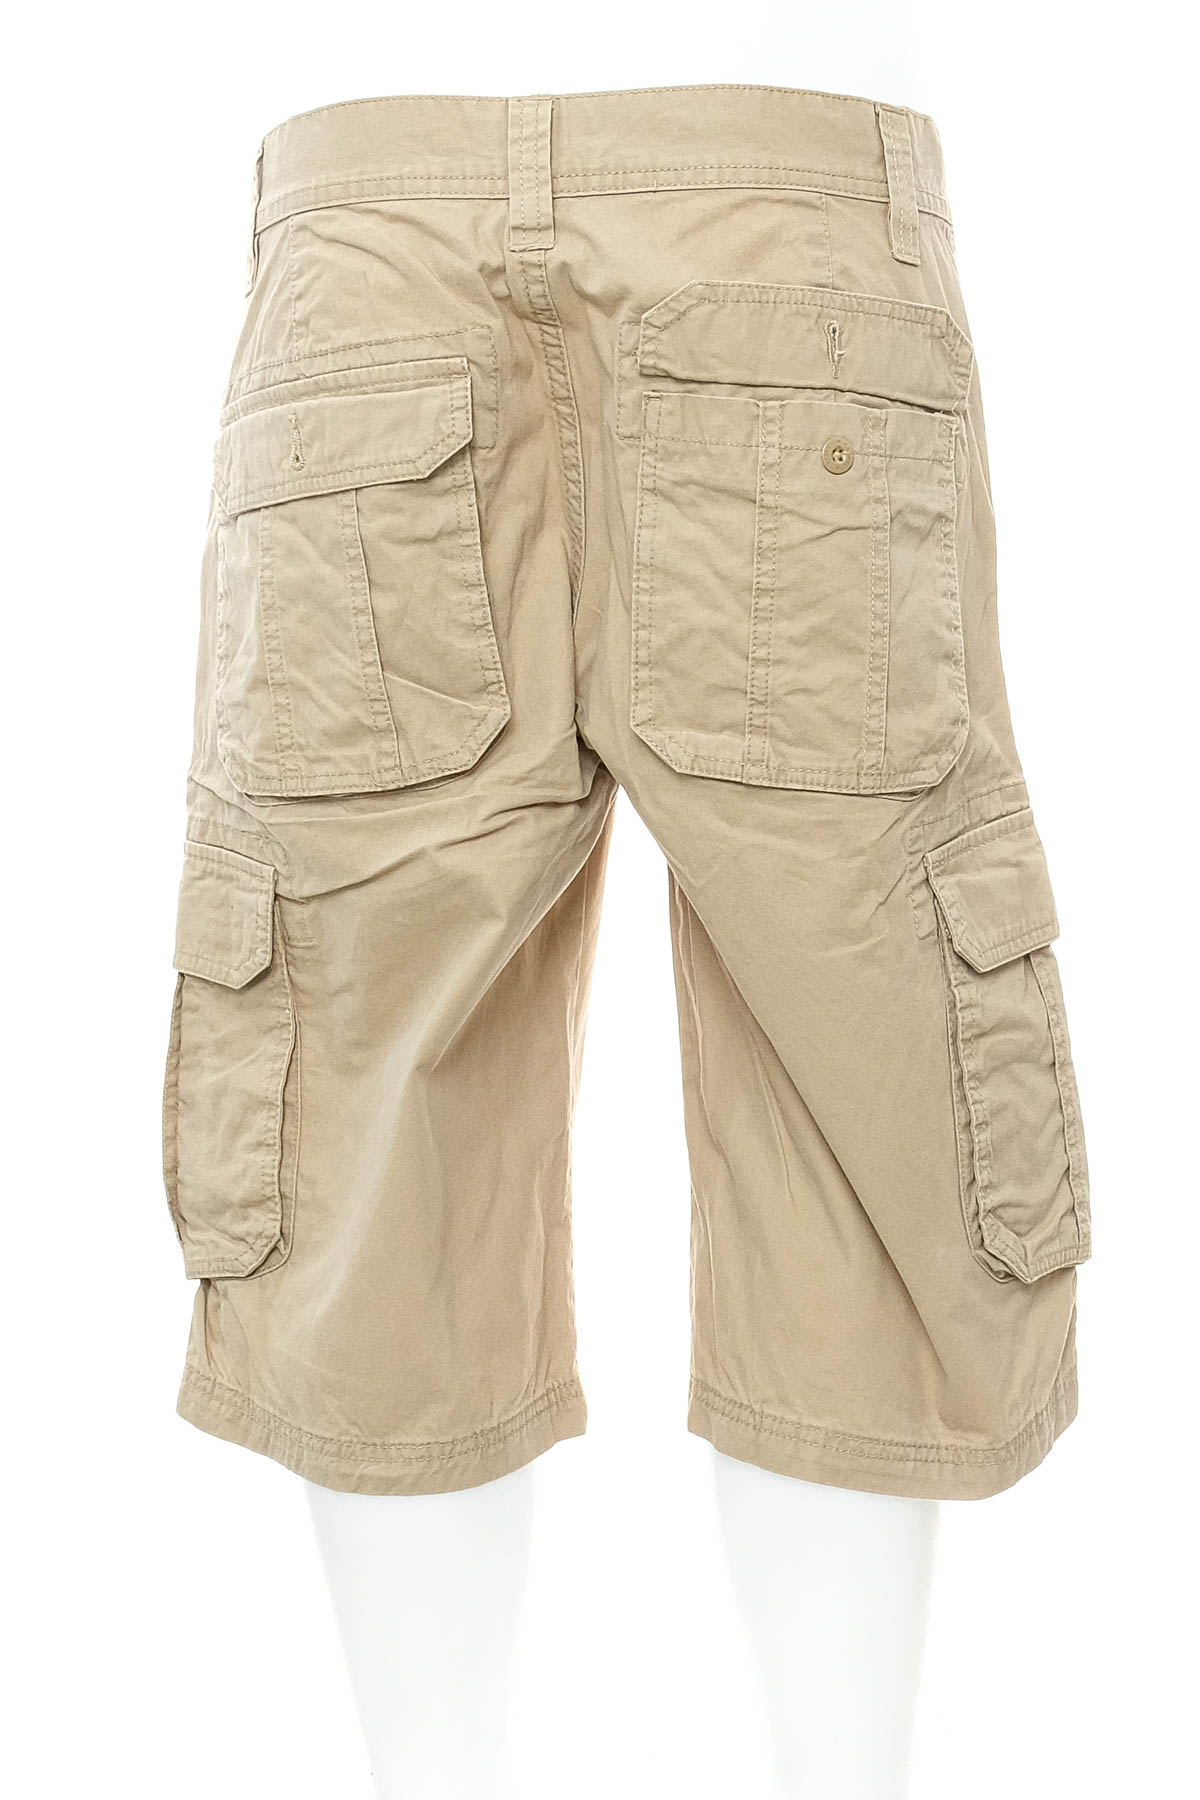 Pantaloni scurți bărbați - Watsons - 1